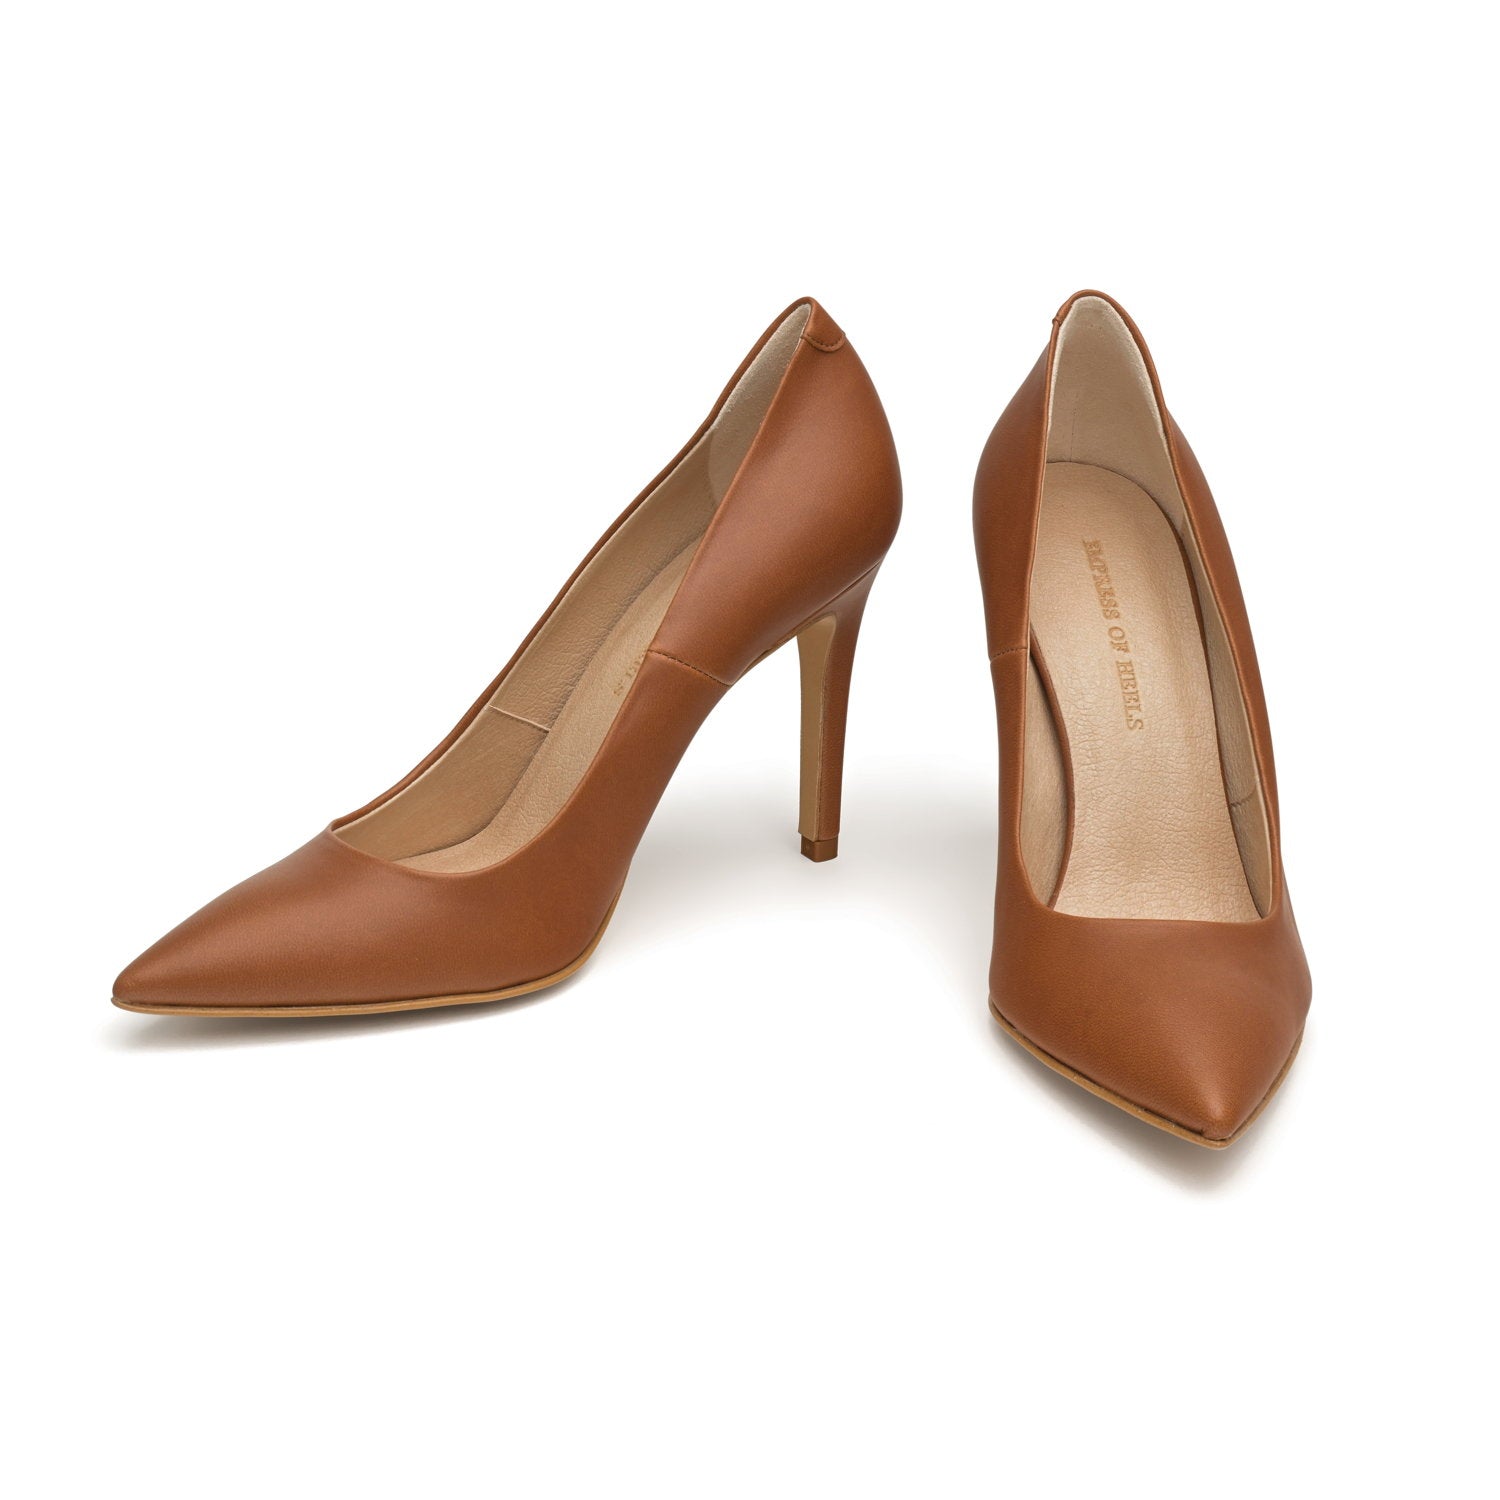 The Brown - vegan 100mm heels